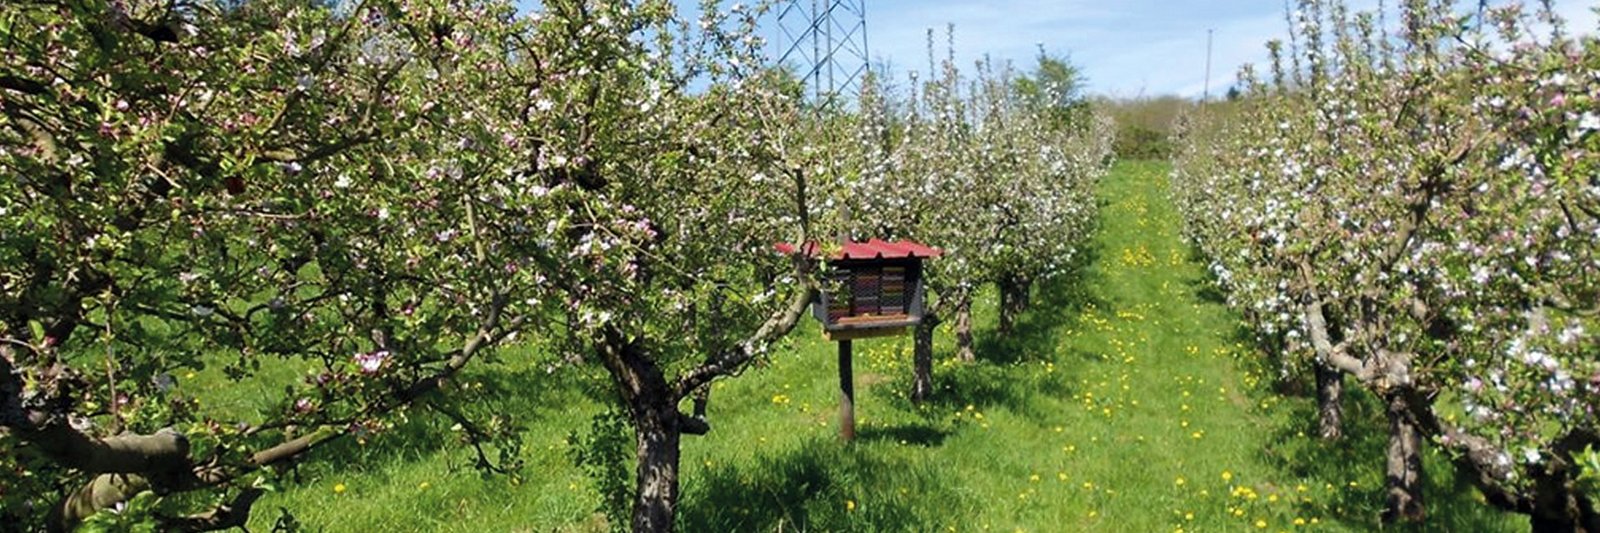 Apfelplantage, Foto: Annette Herz, JKI Darmstadt